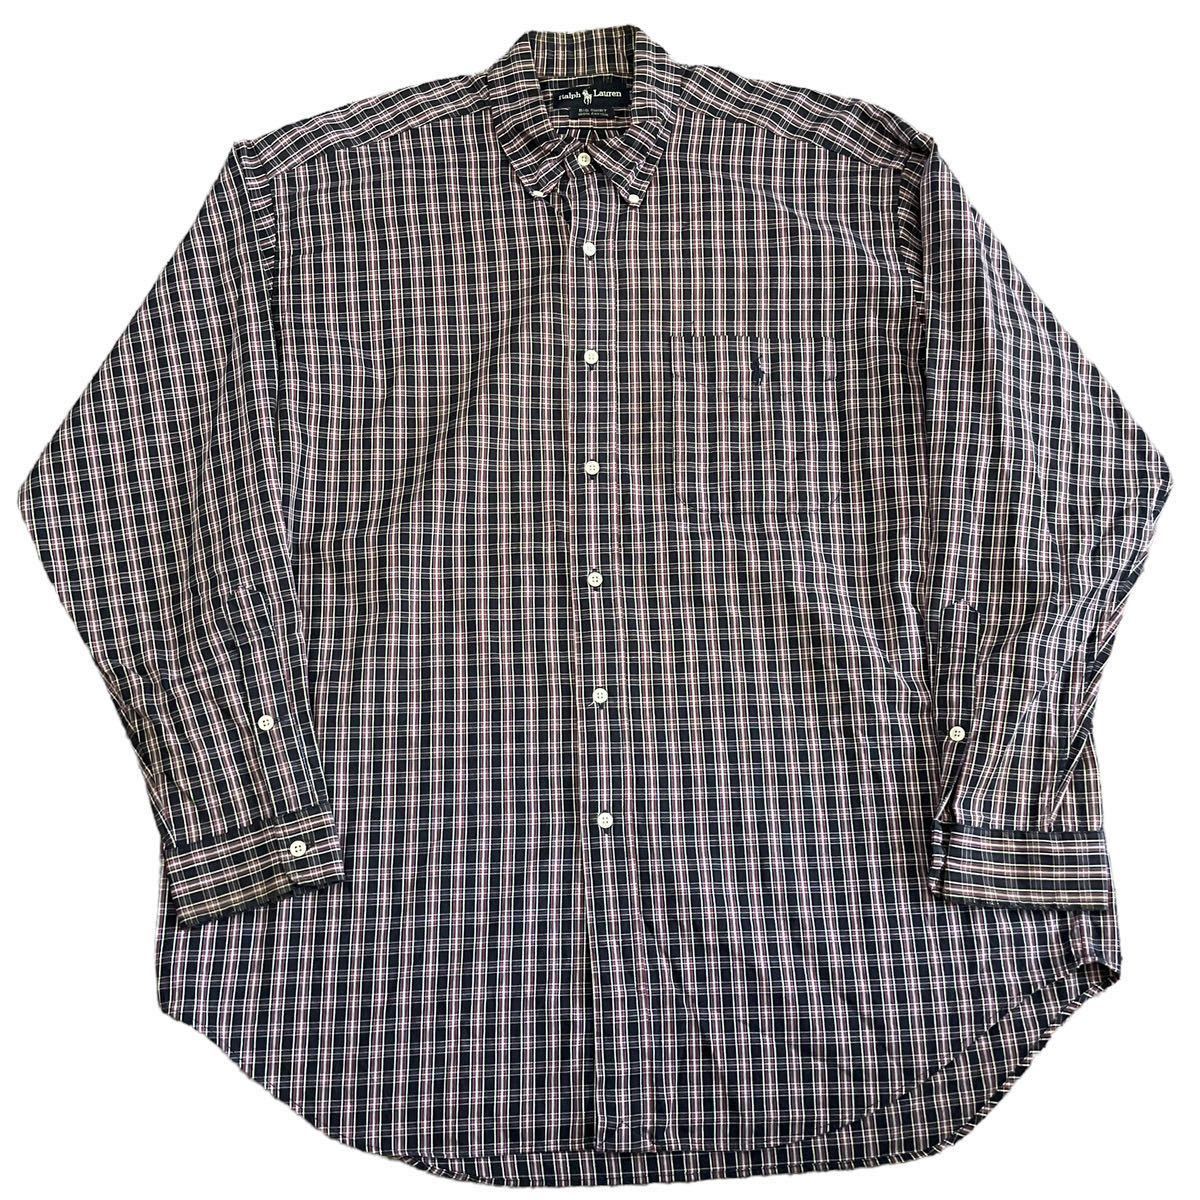 90s Ralph Lauren The Big Shirt ボタンダウンシャツ L 長袖 シャツ チェック柄 ロゴ ワンポイント Polo ポロ ラルフローレン ヴィンテージ